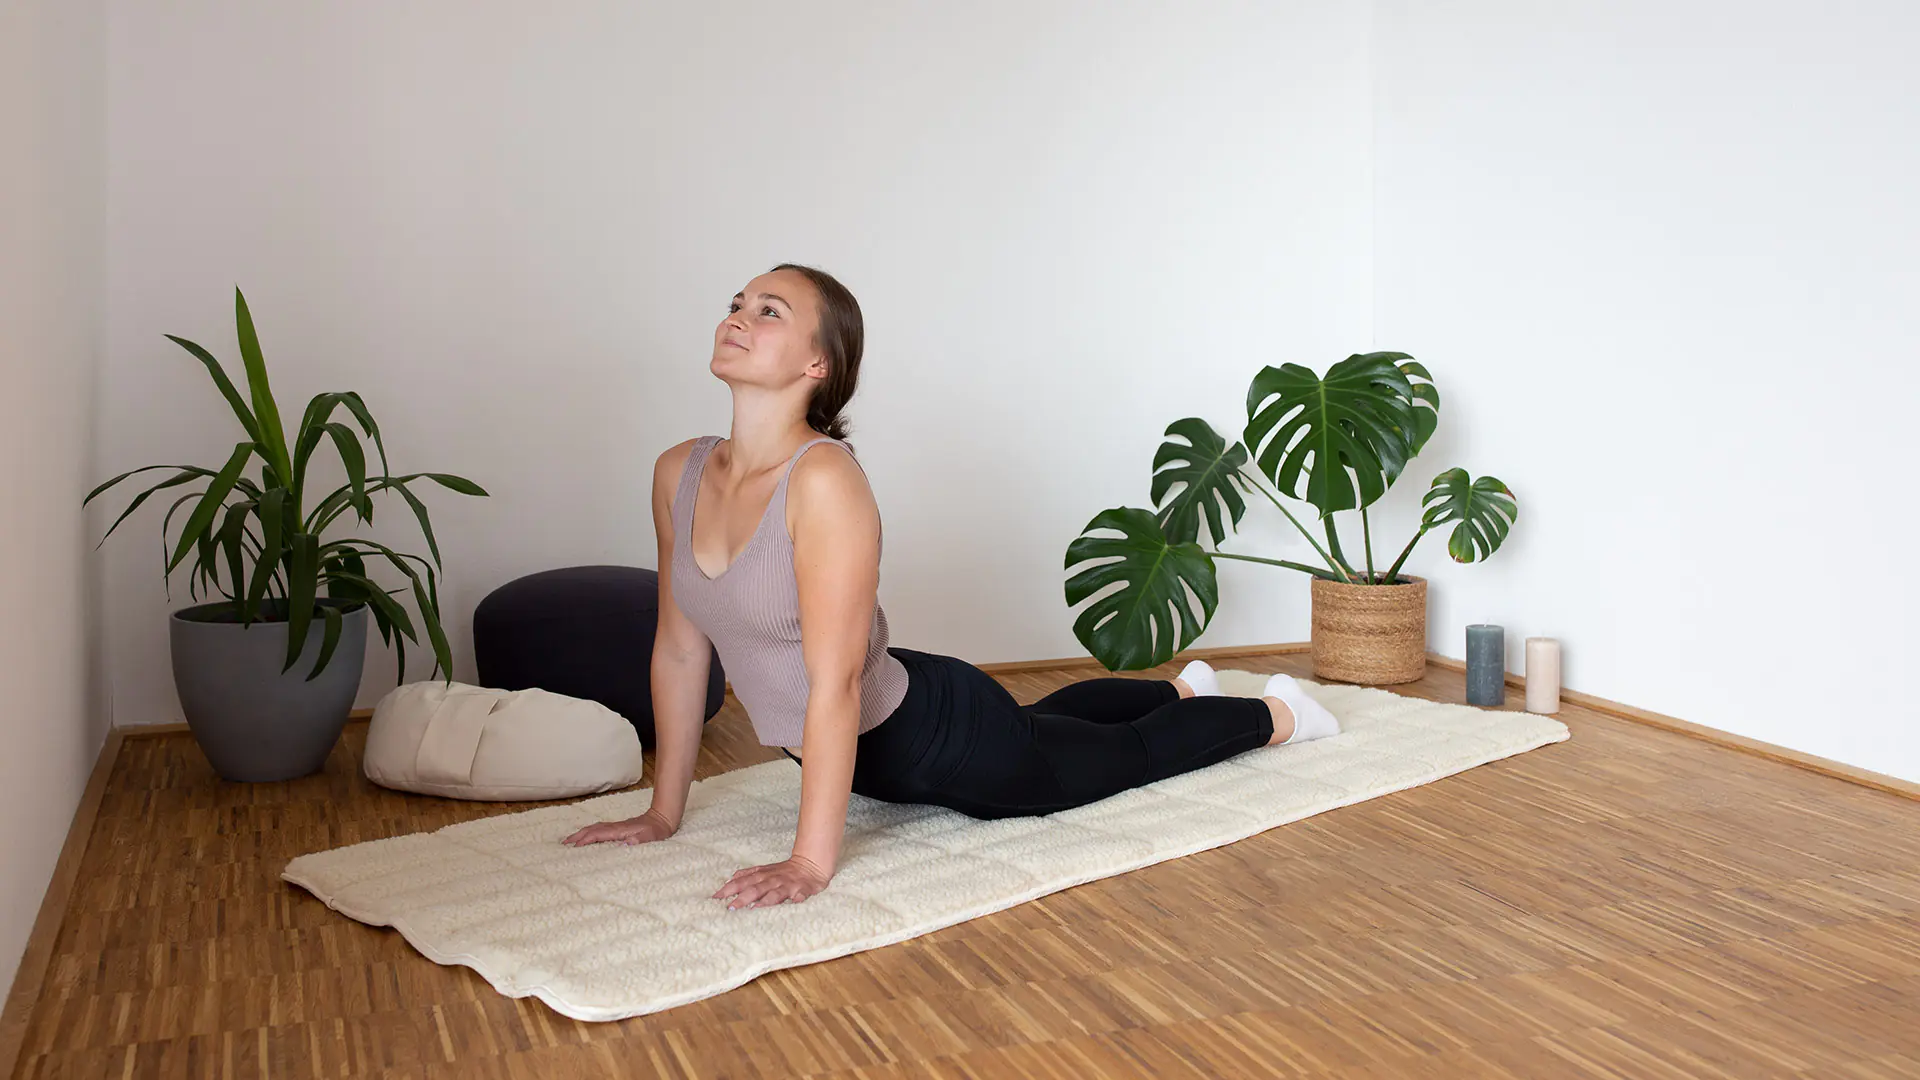 Antislip yogamat met scheerwollen wattering en schaapscheerwollen bovenkant